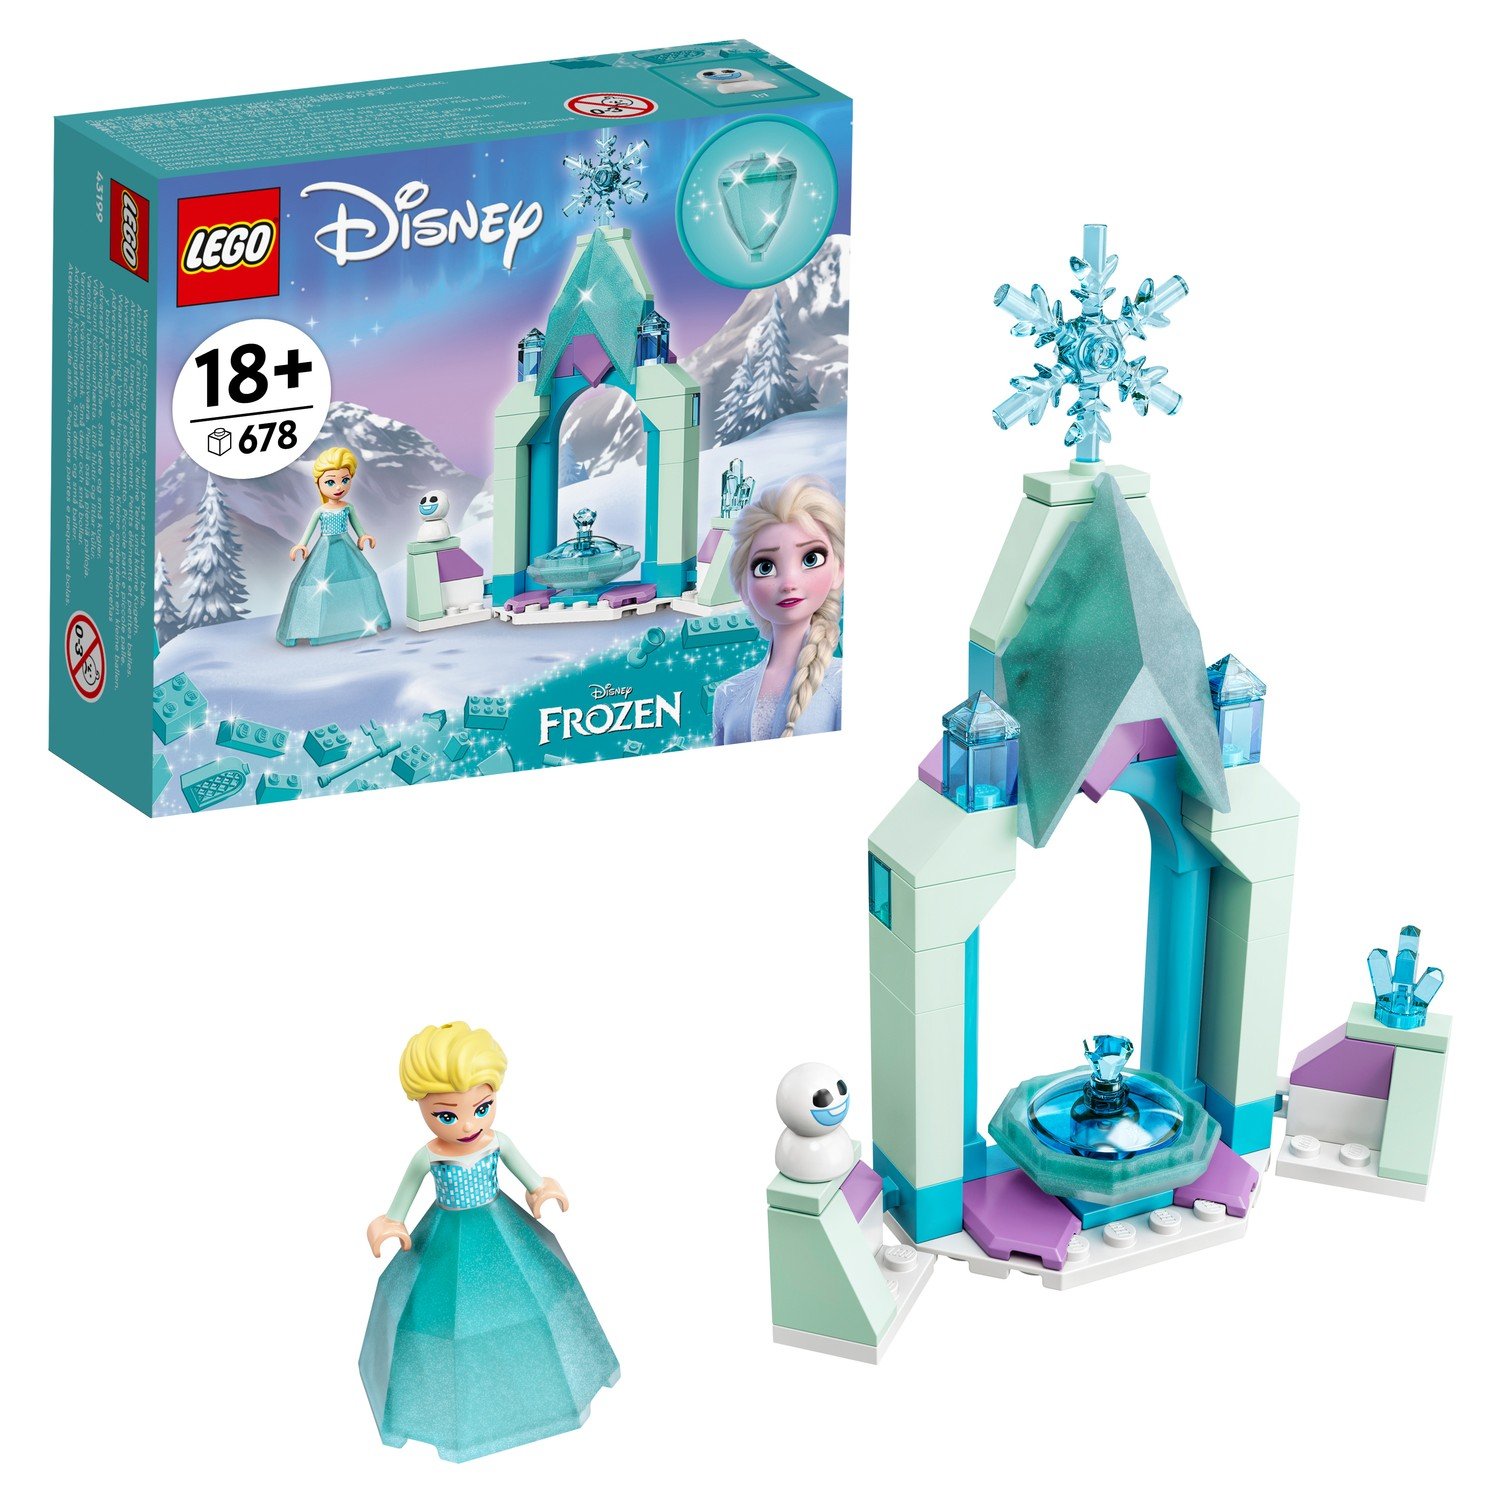 LEGO Disney Princess Frozen Двор замка Эльзы 43199 игра настольная эврикус двор чудес арт pg 17025 эврикус